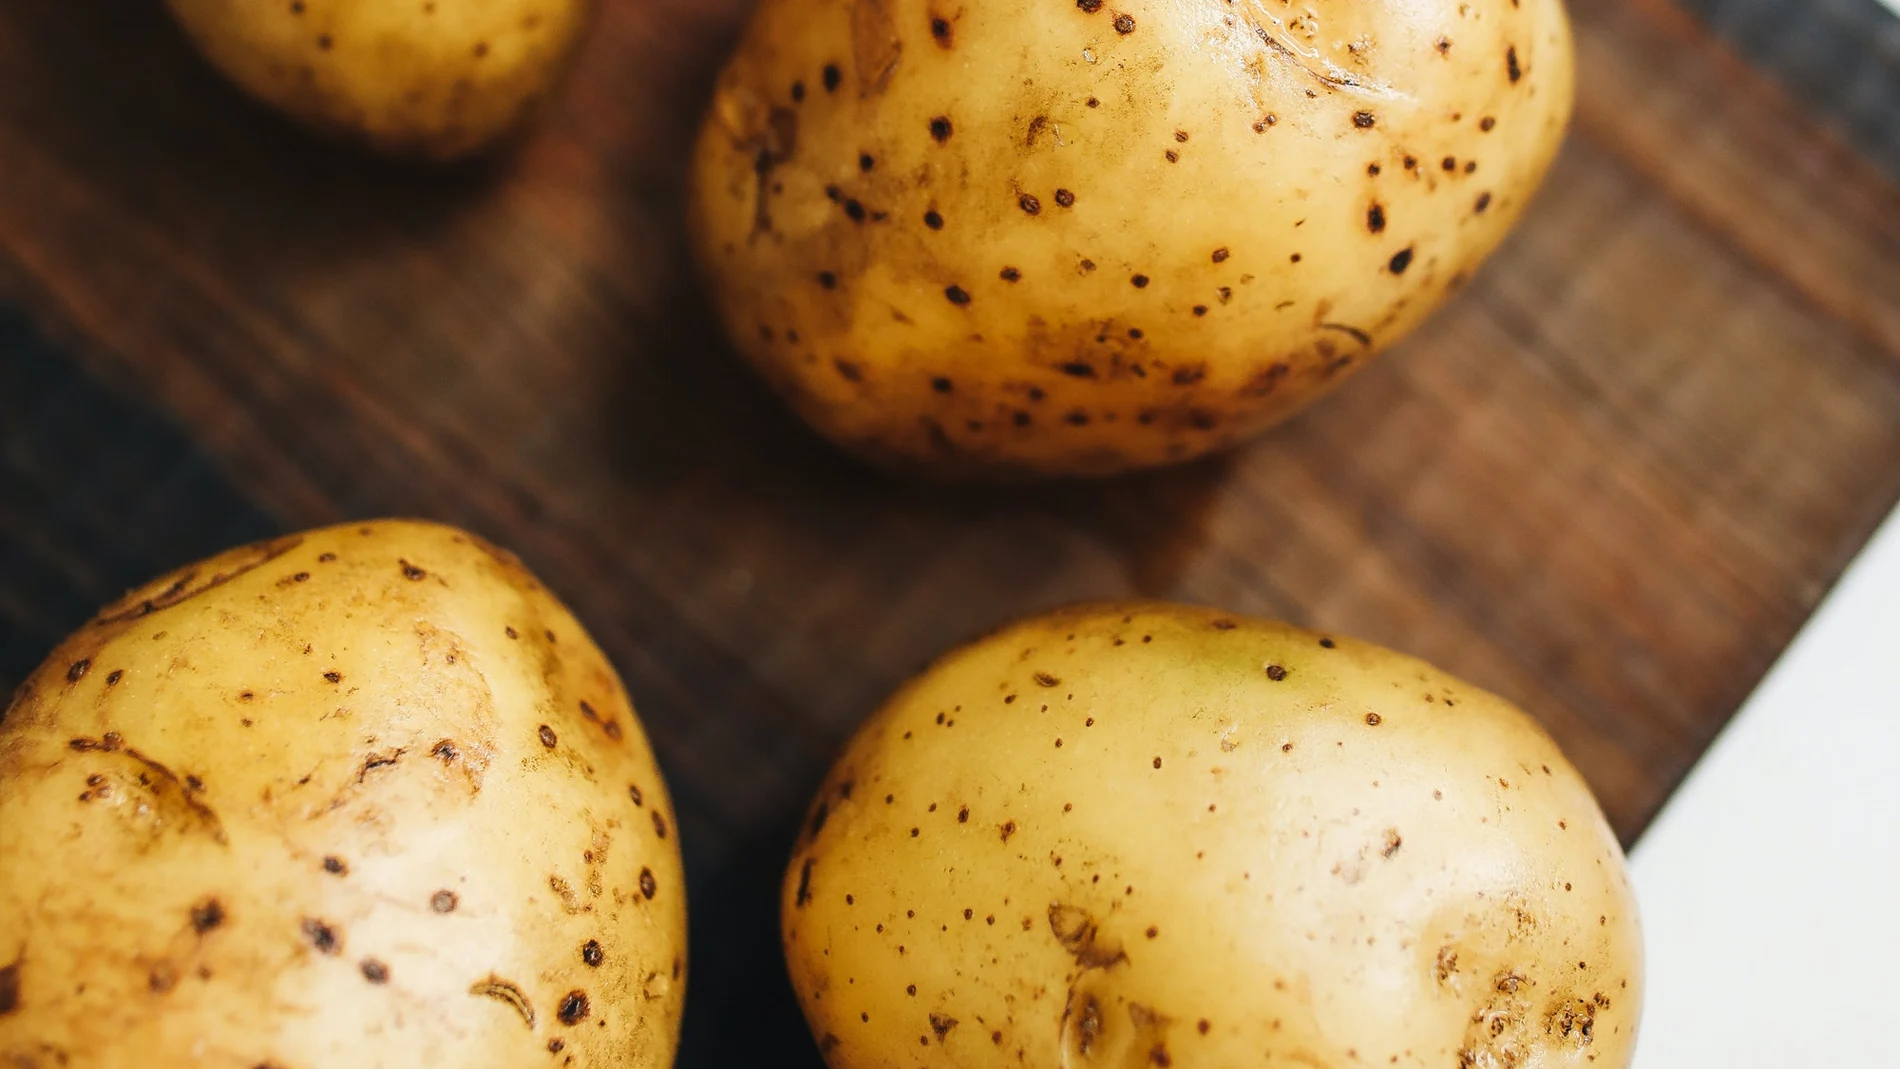 Cómo hacer patatas en el microondas